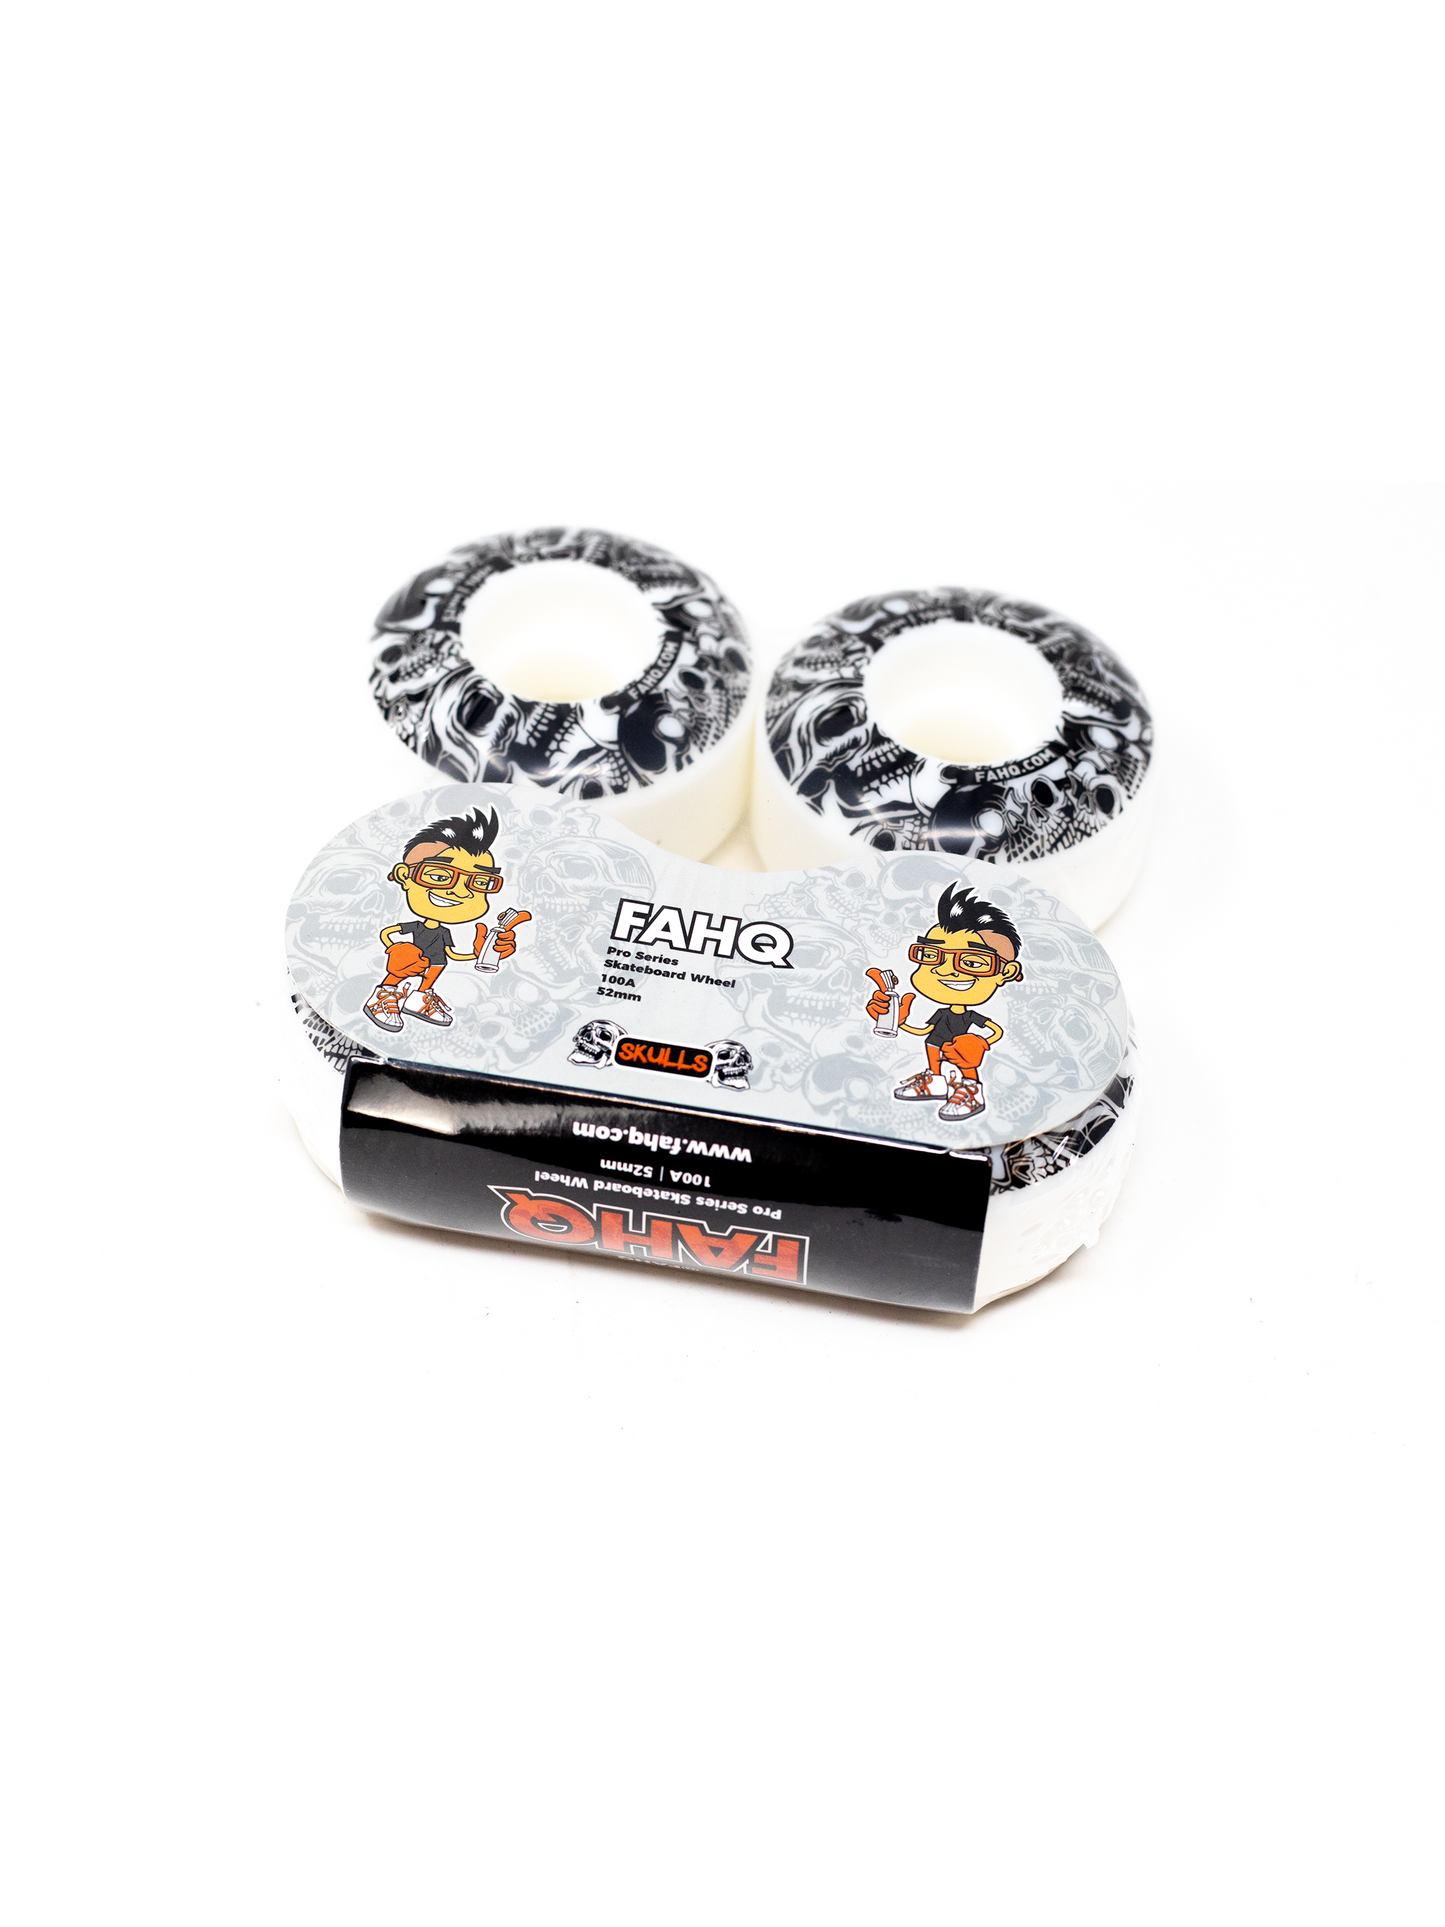 FAHQ Skulls Skateboard Wheels Packaging